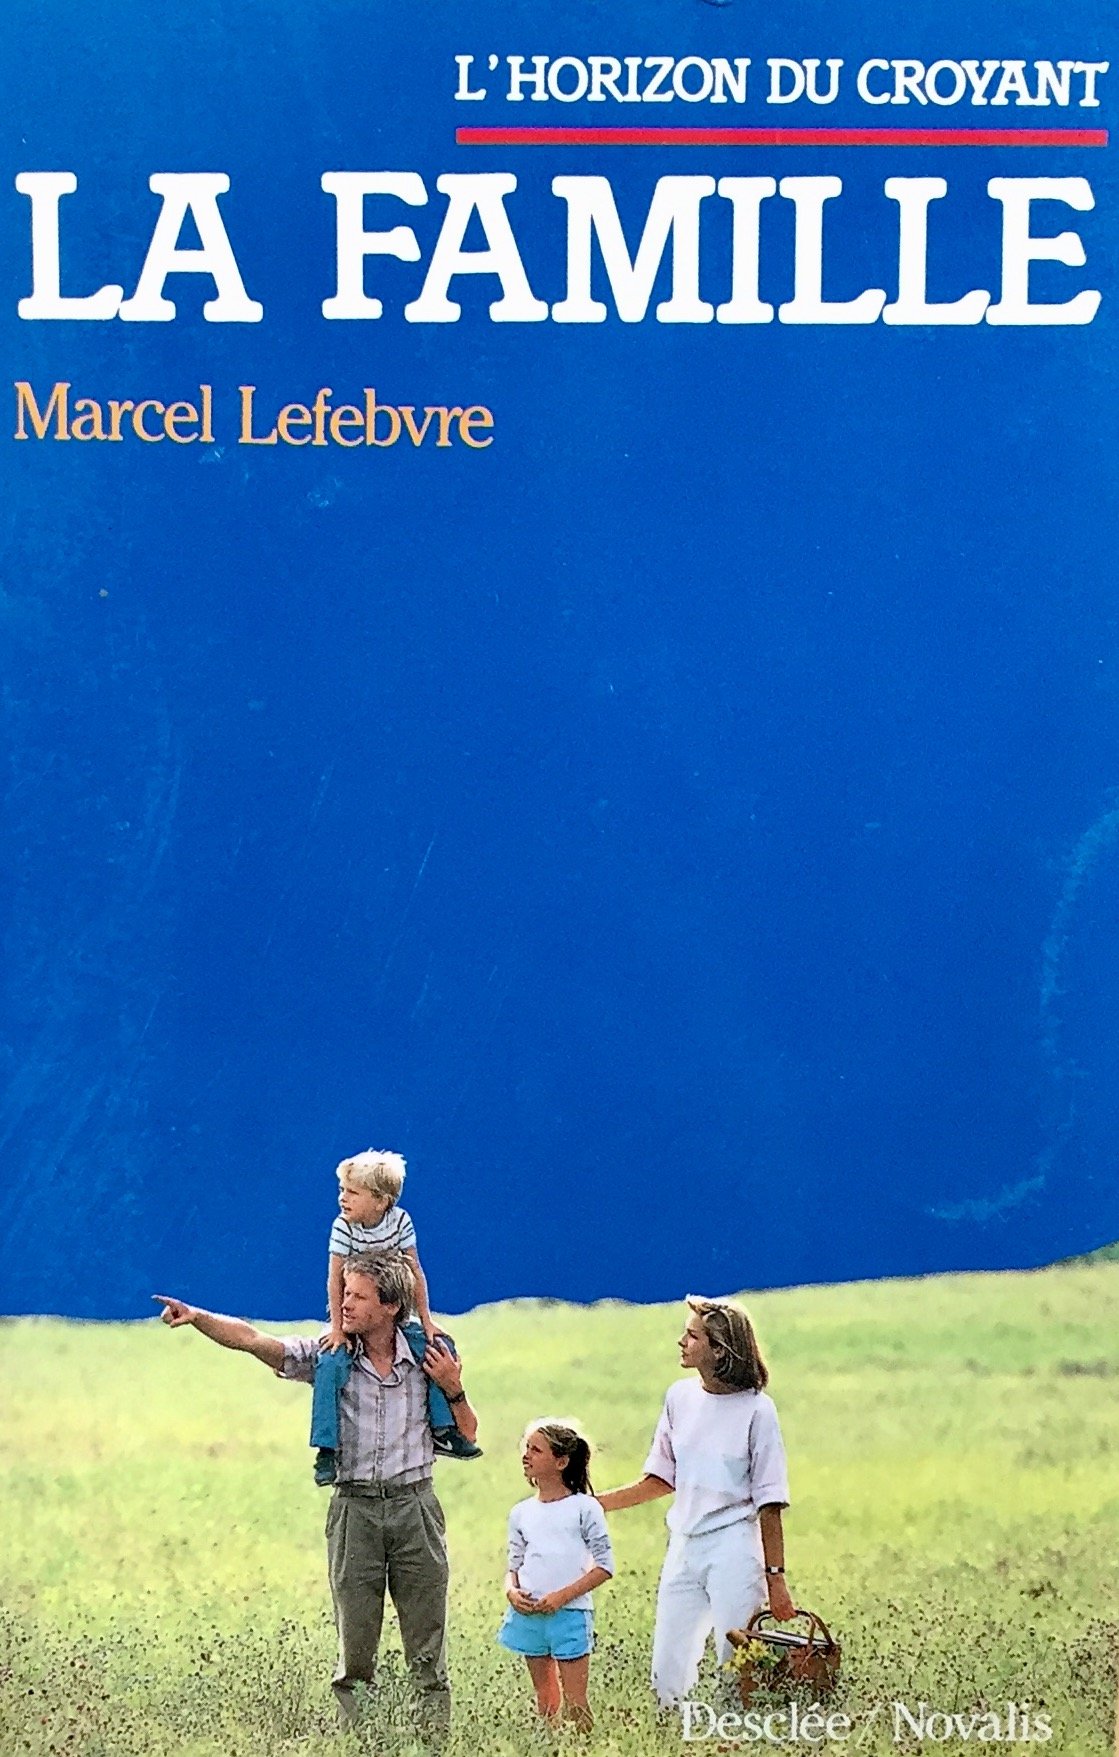 Livre ISBN 2718903732 L'horizon du croyant : L'horizon du croyant : La famille (Marcel Lefebvre)